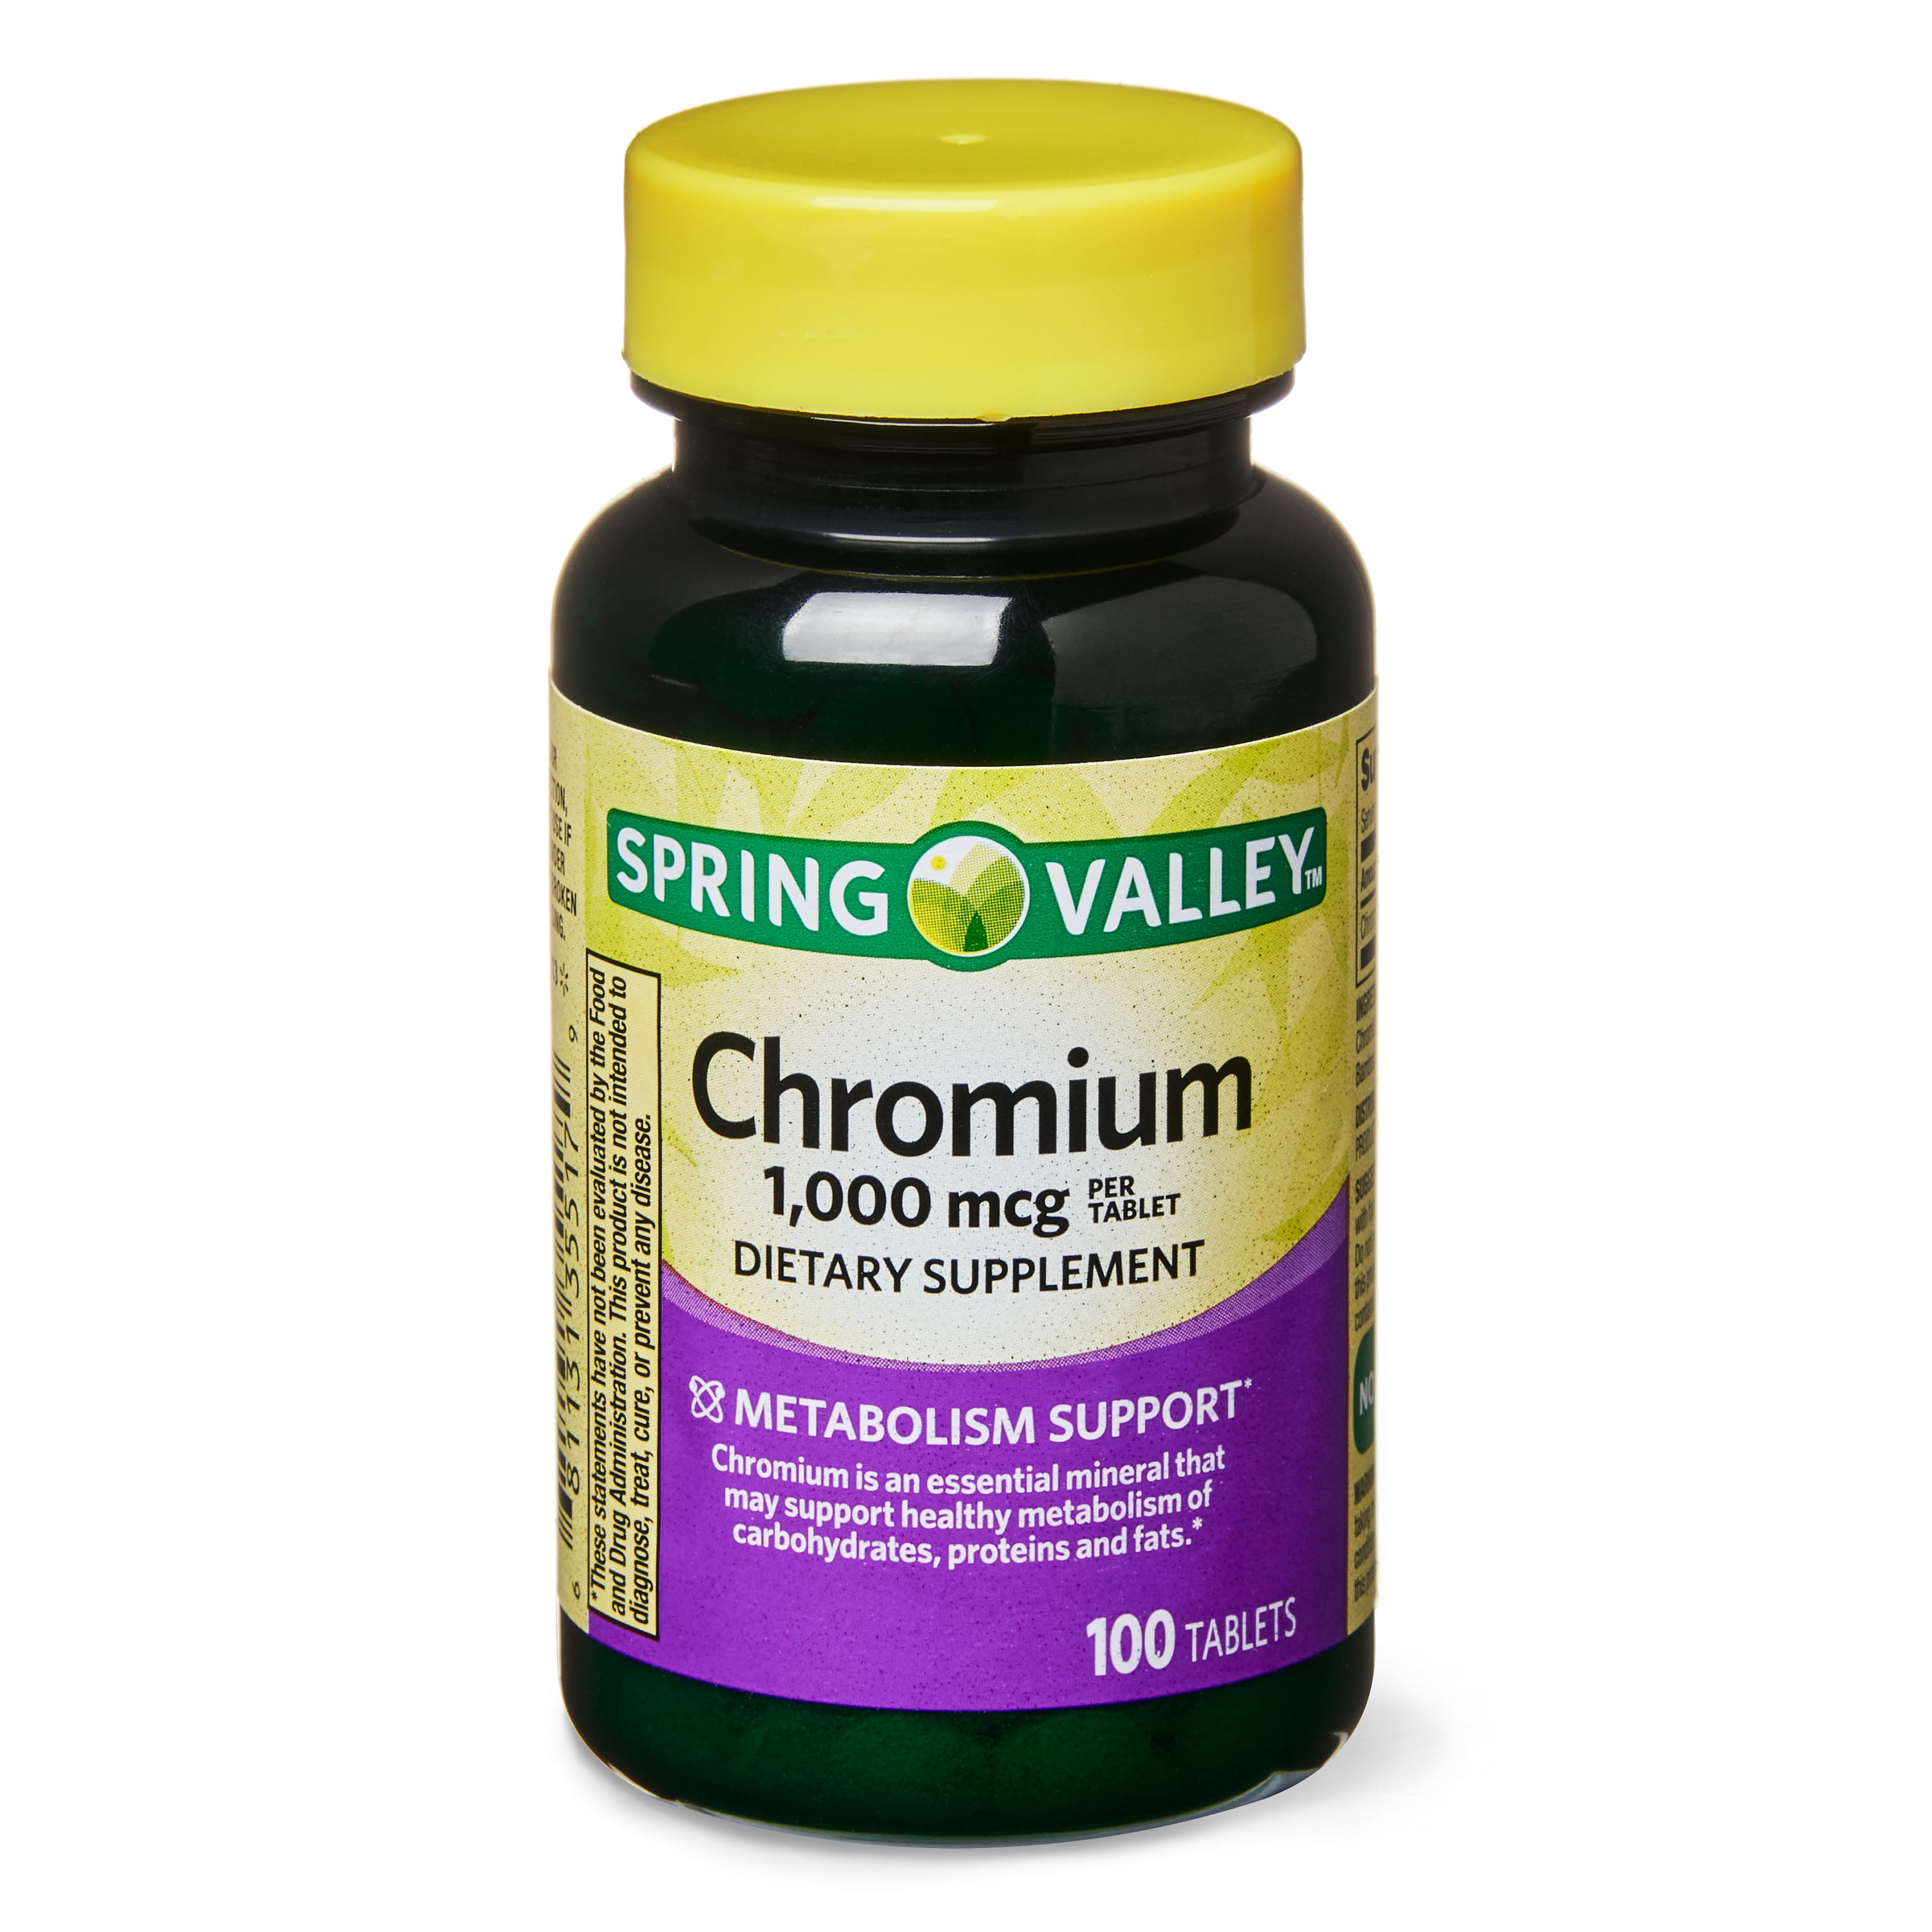 cinnamon and chromium picolinate supplements